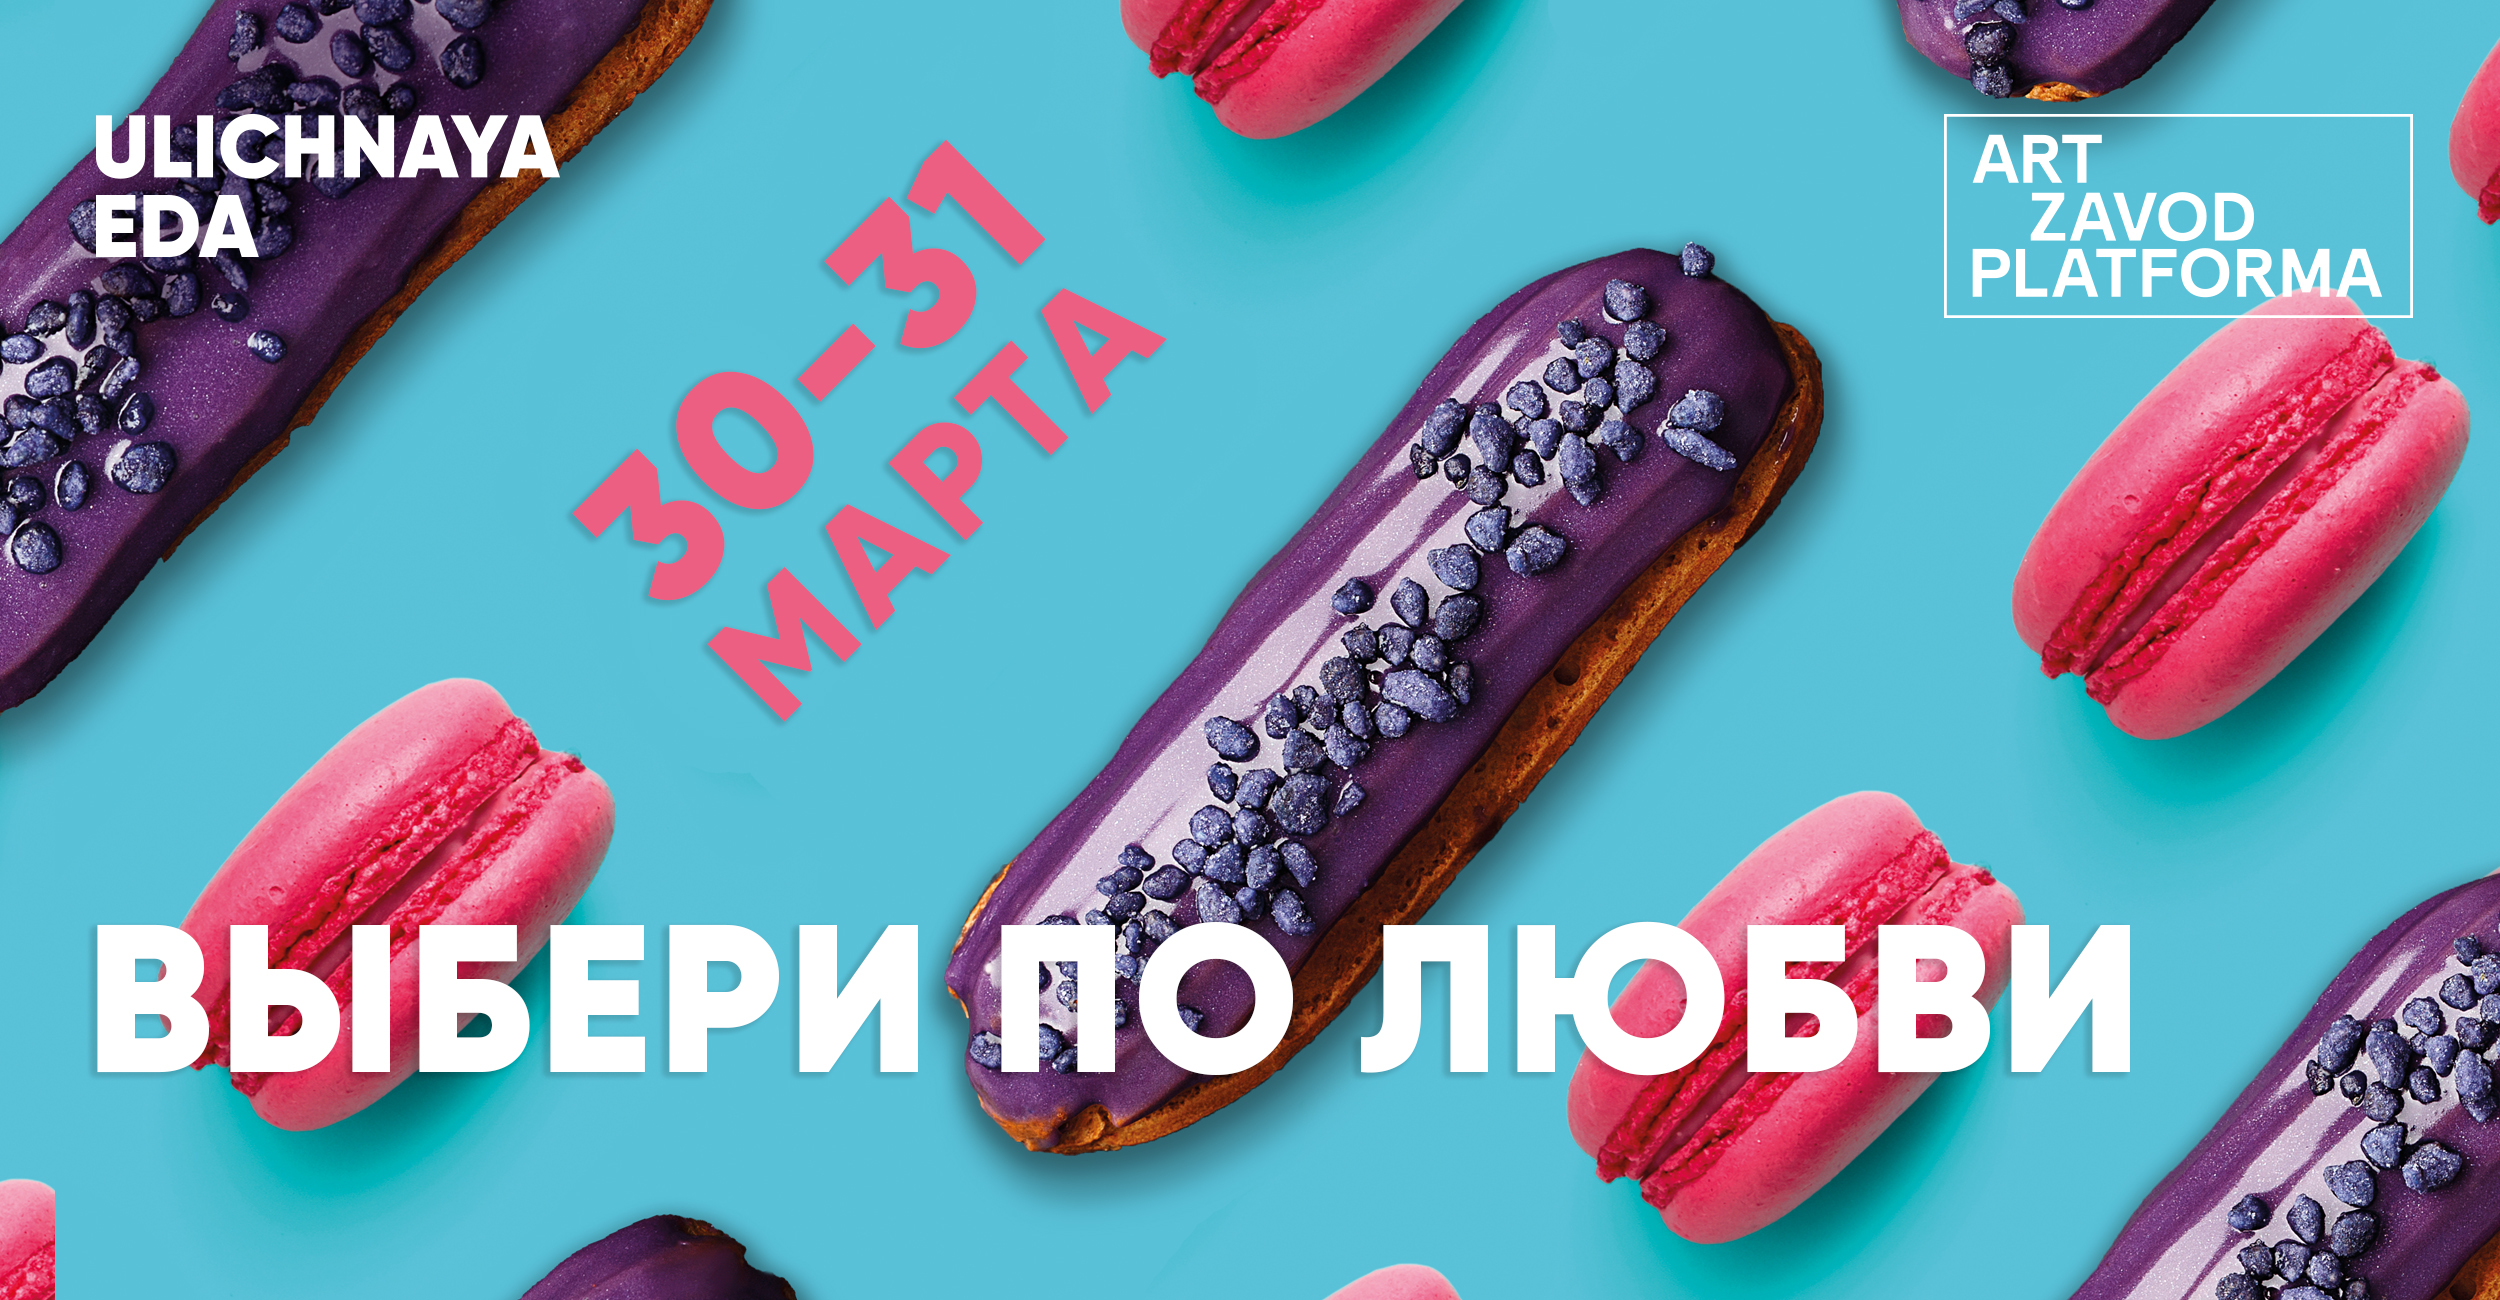 фестиваль уличной еды киев 2019